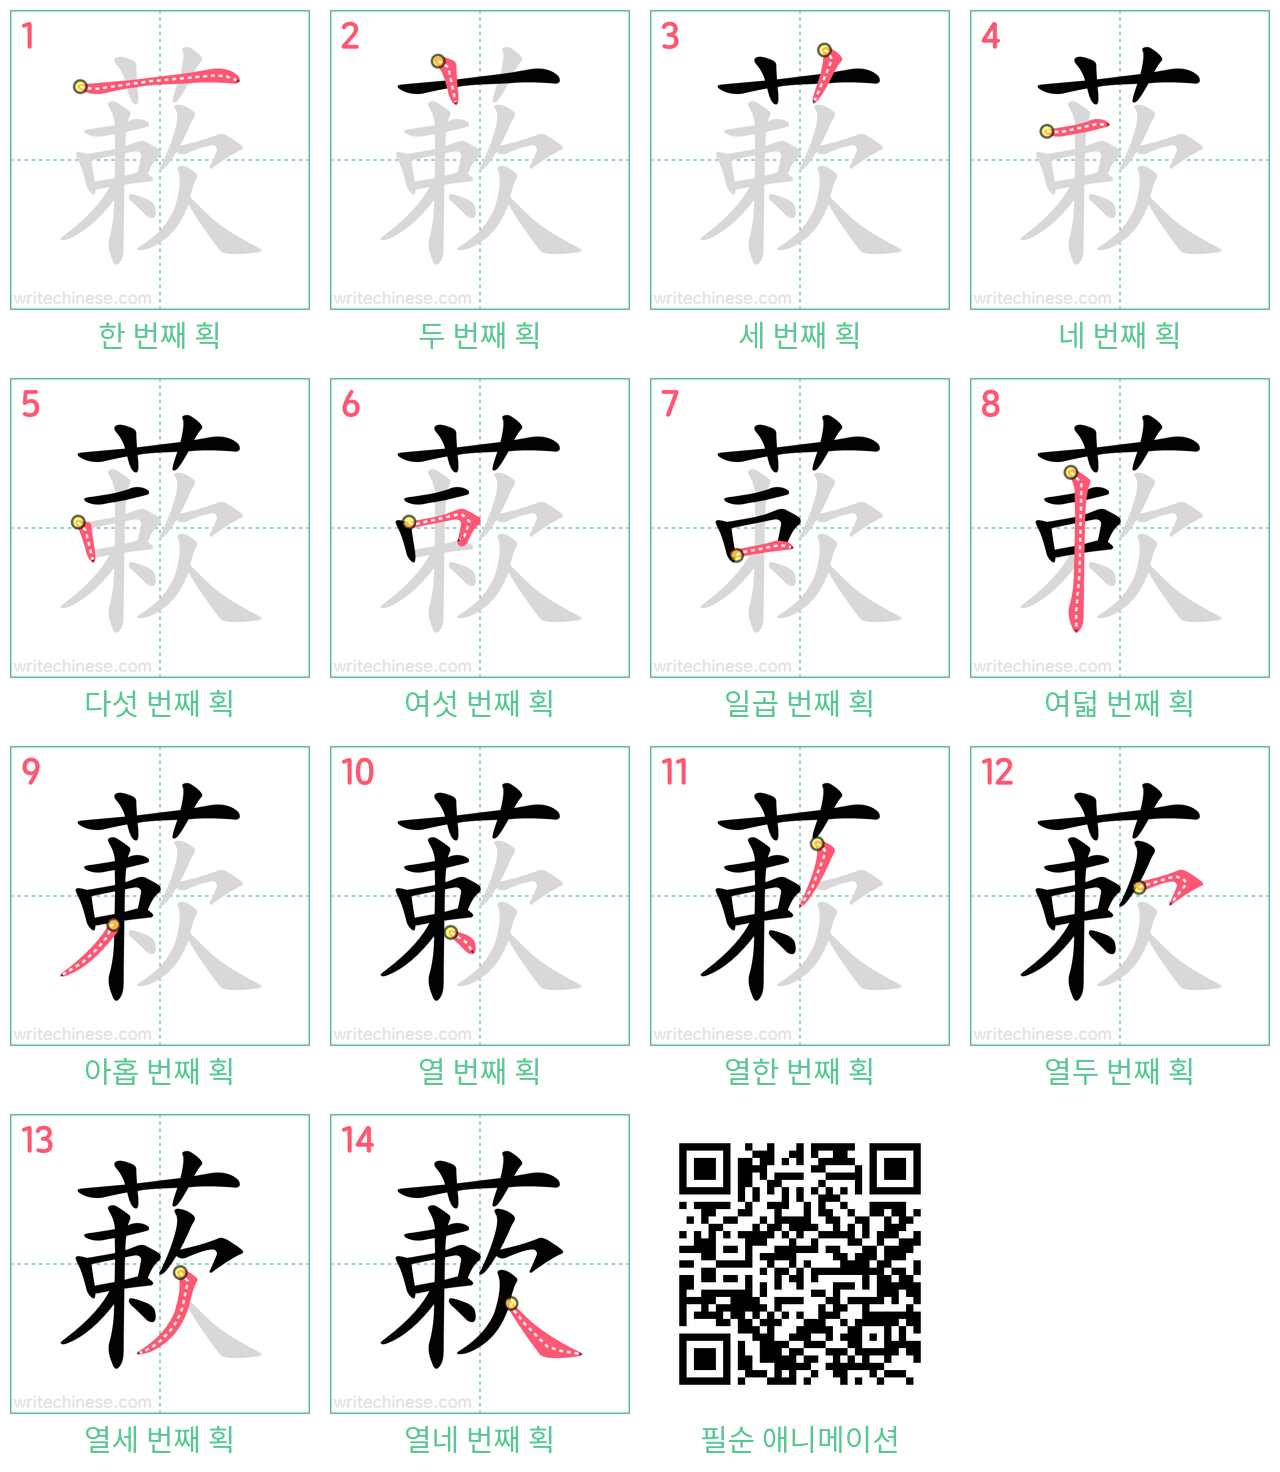 蔌 step-by-step stroke order diagrams